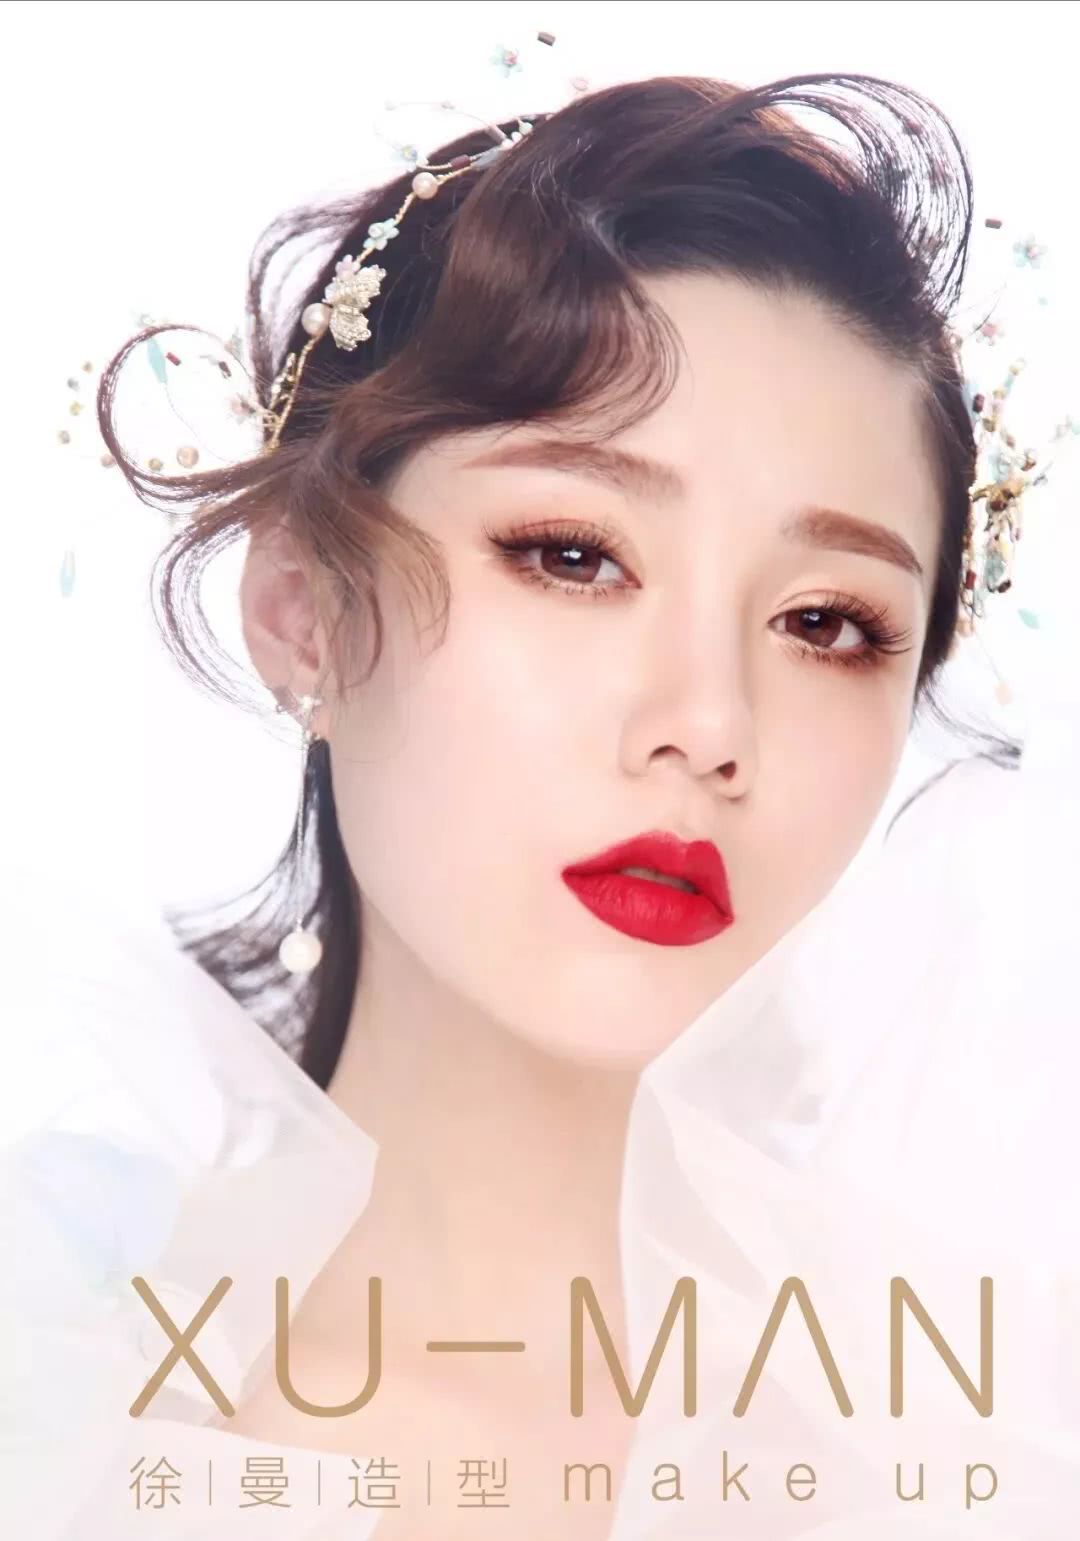 最新日韩风格新娘造型,美爆朋友圈,化妆师都在收藏转发!